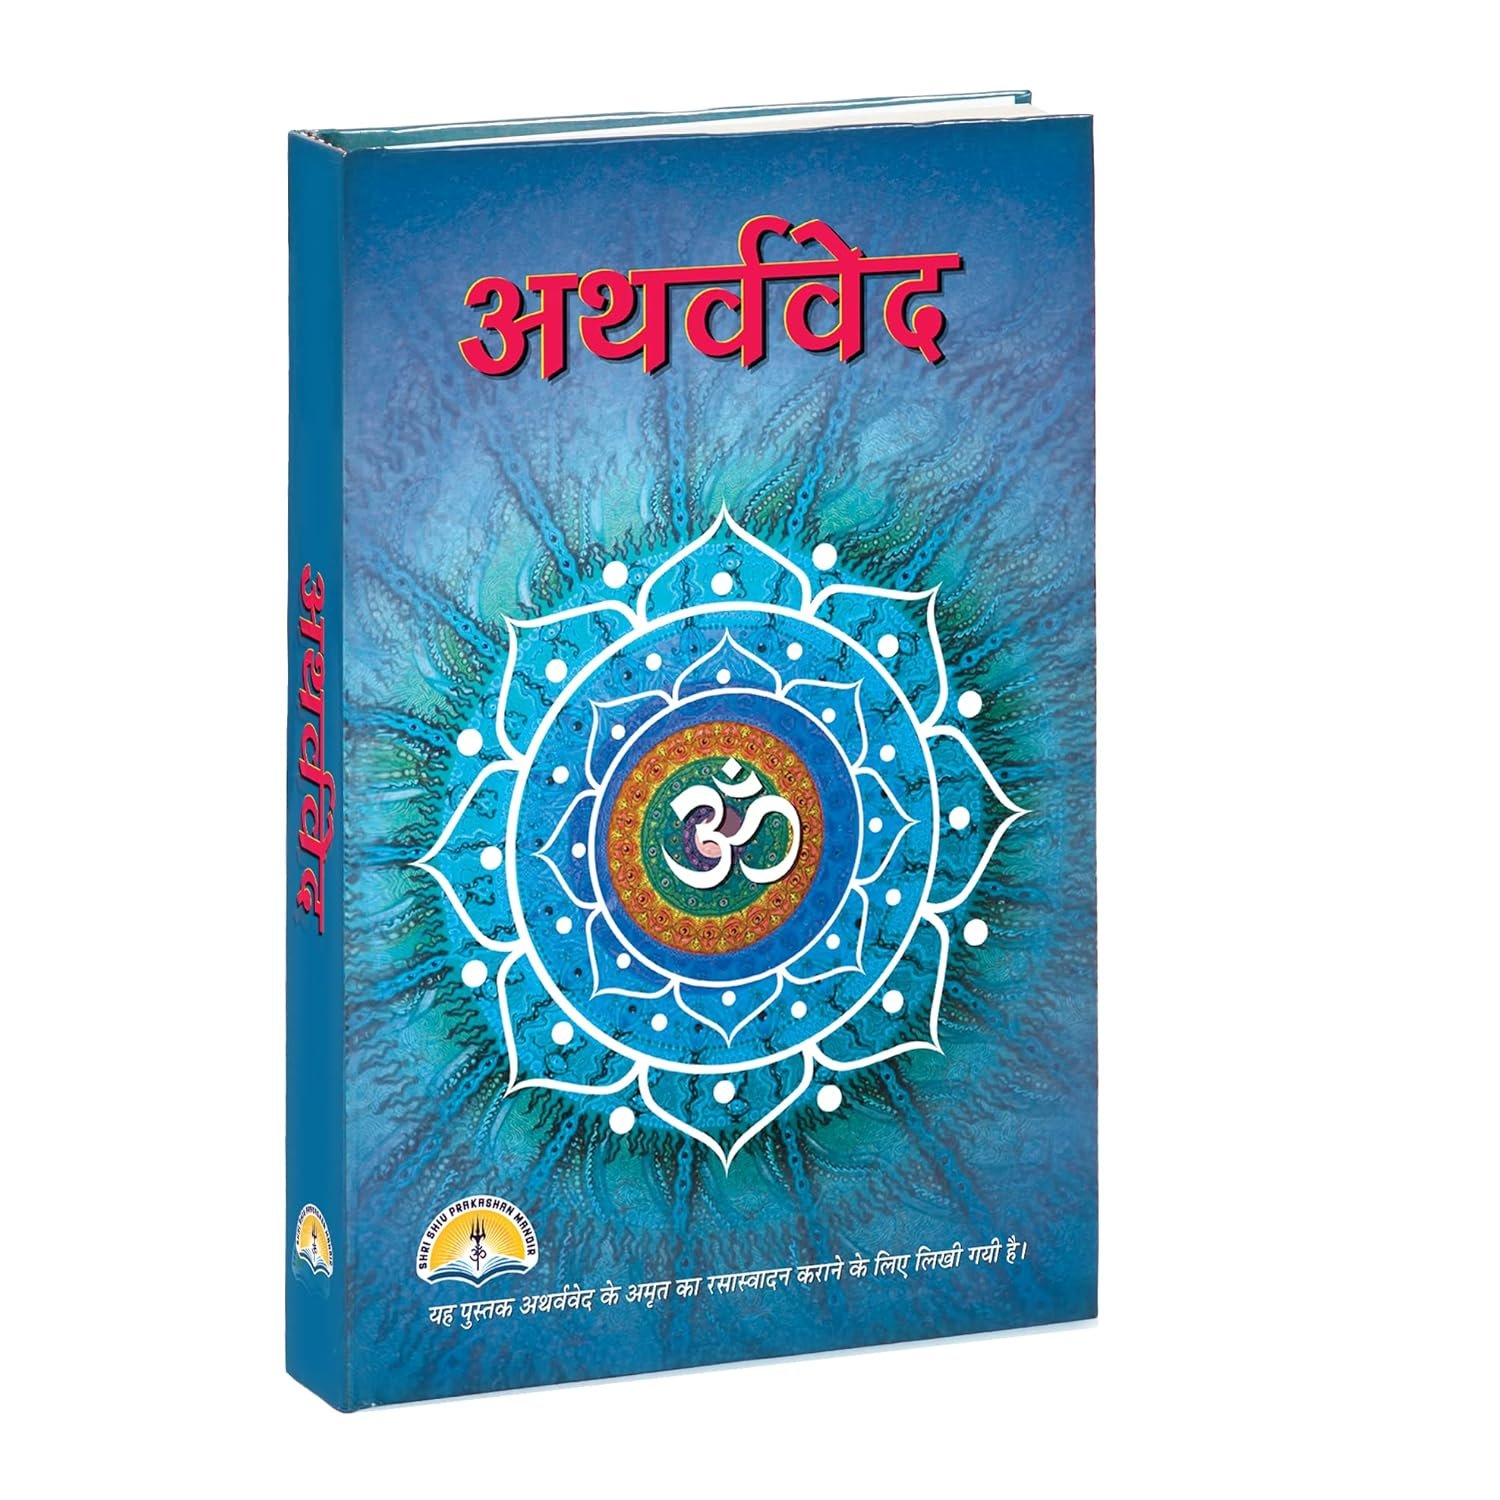 [Hindi] Atharvaveda Hardcover by Shri Shiv Prakashan Mandir